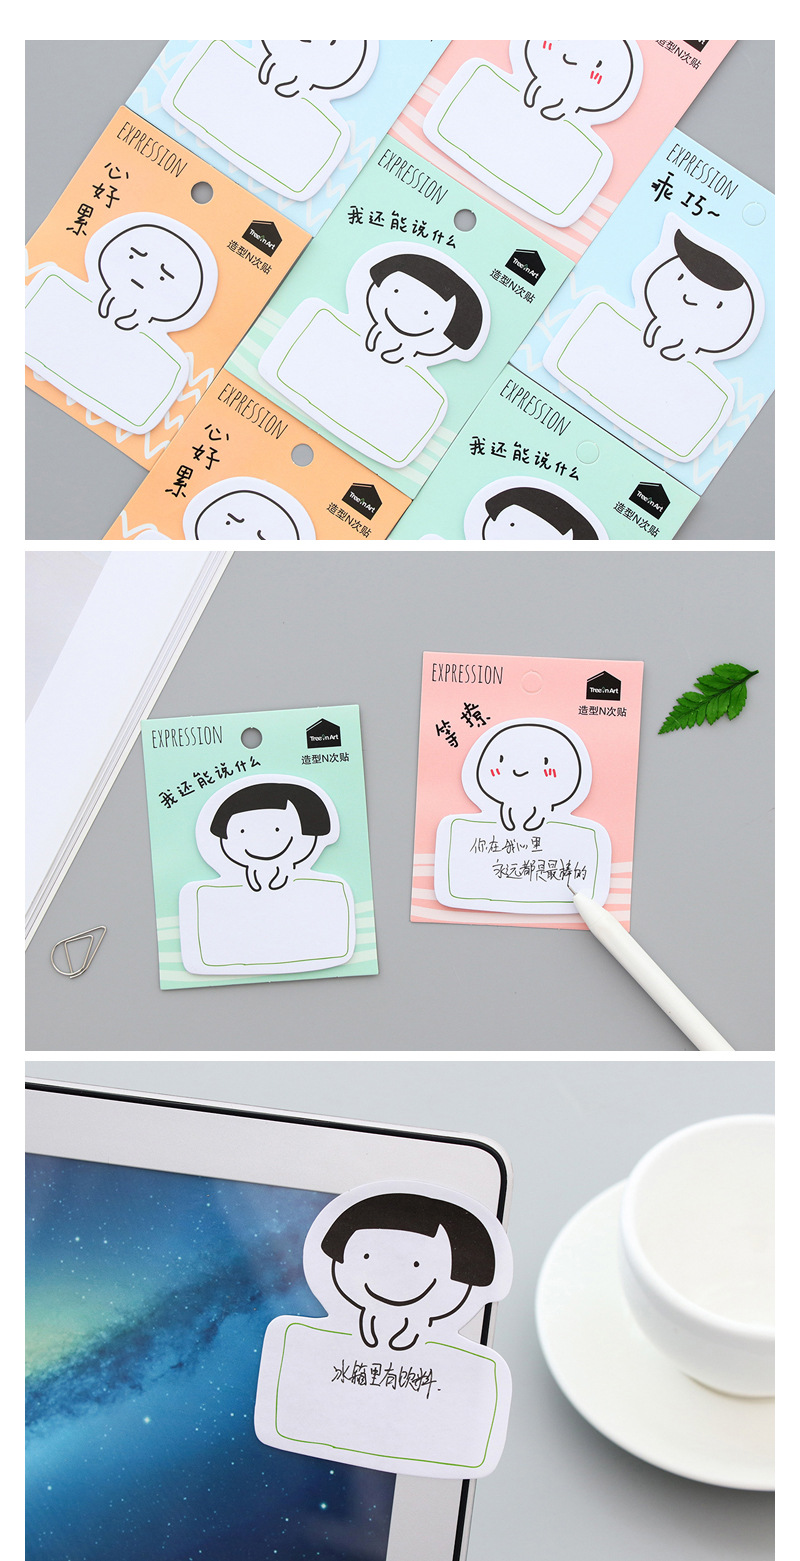 韓版文具表情包N次貼 創意卡通便利貼小便簽便條貼紙批發